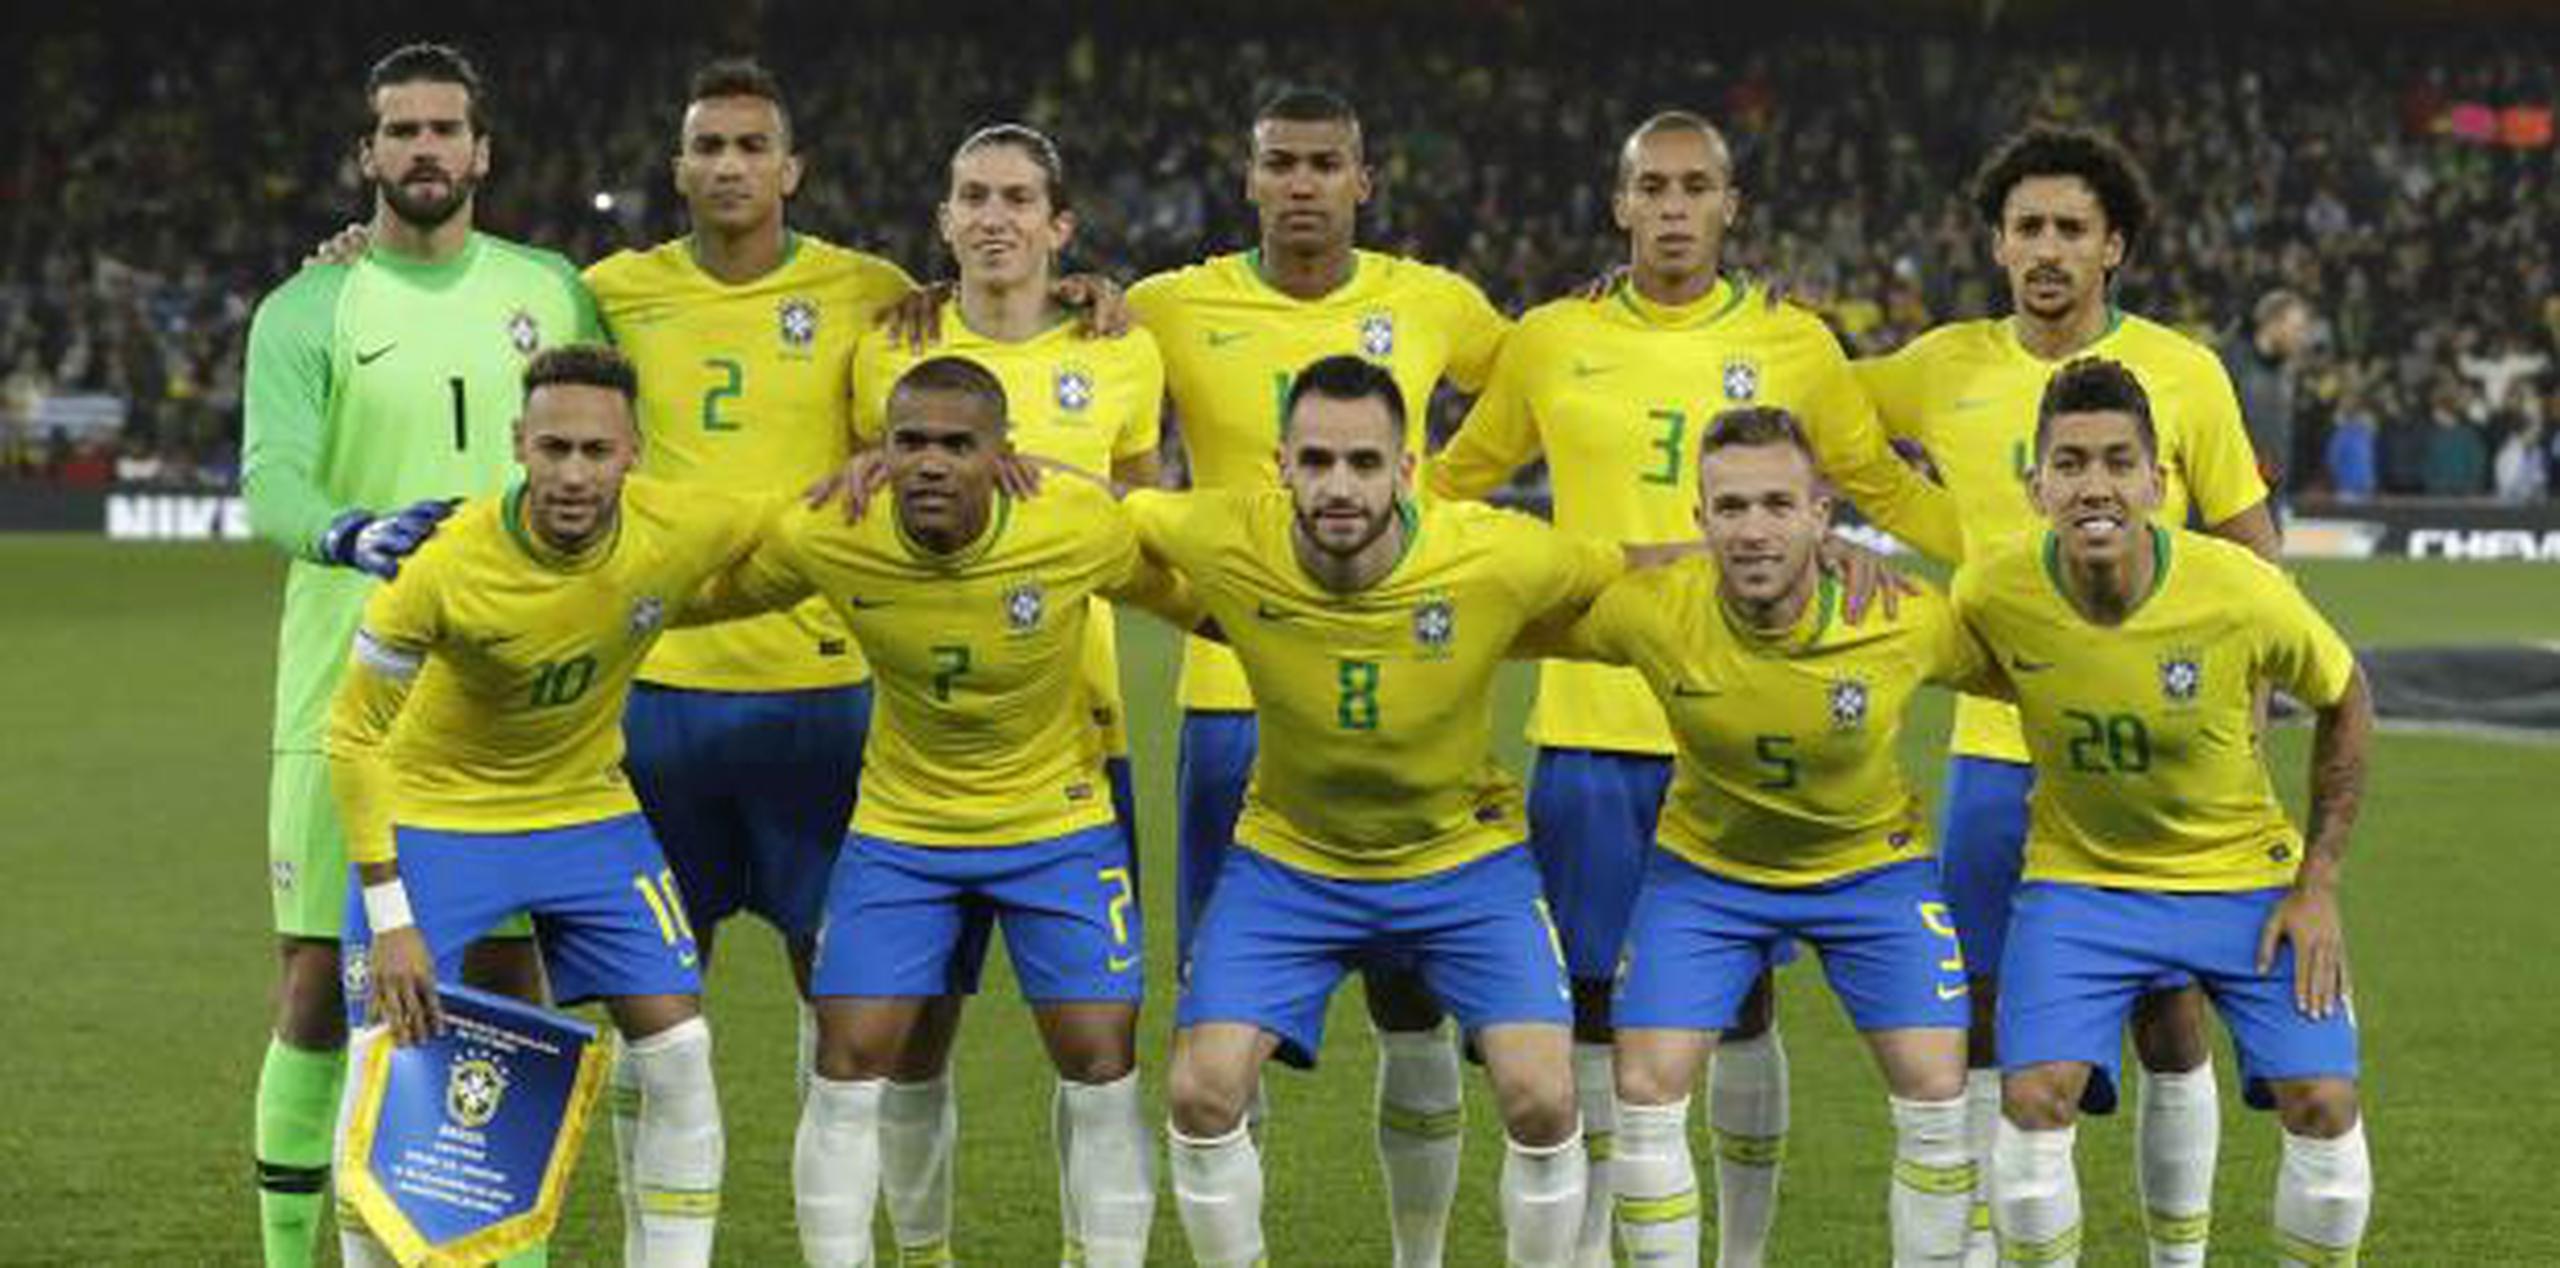 Se guardó un momento de silencio por su muerte previo al amistoso Brasil-Uruguay en Londres ayer, viernes. (AP / Matt Dunham)